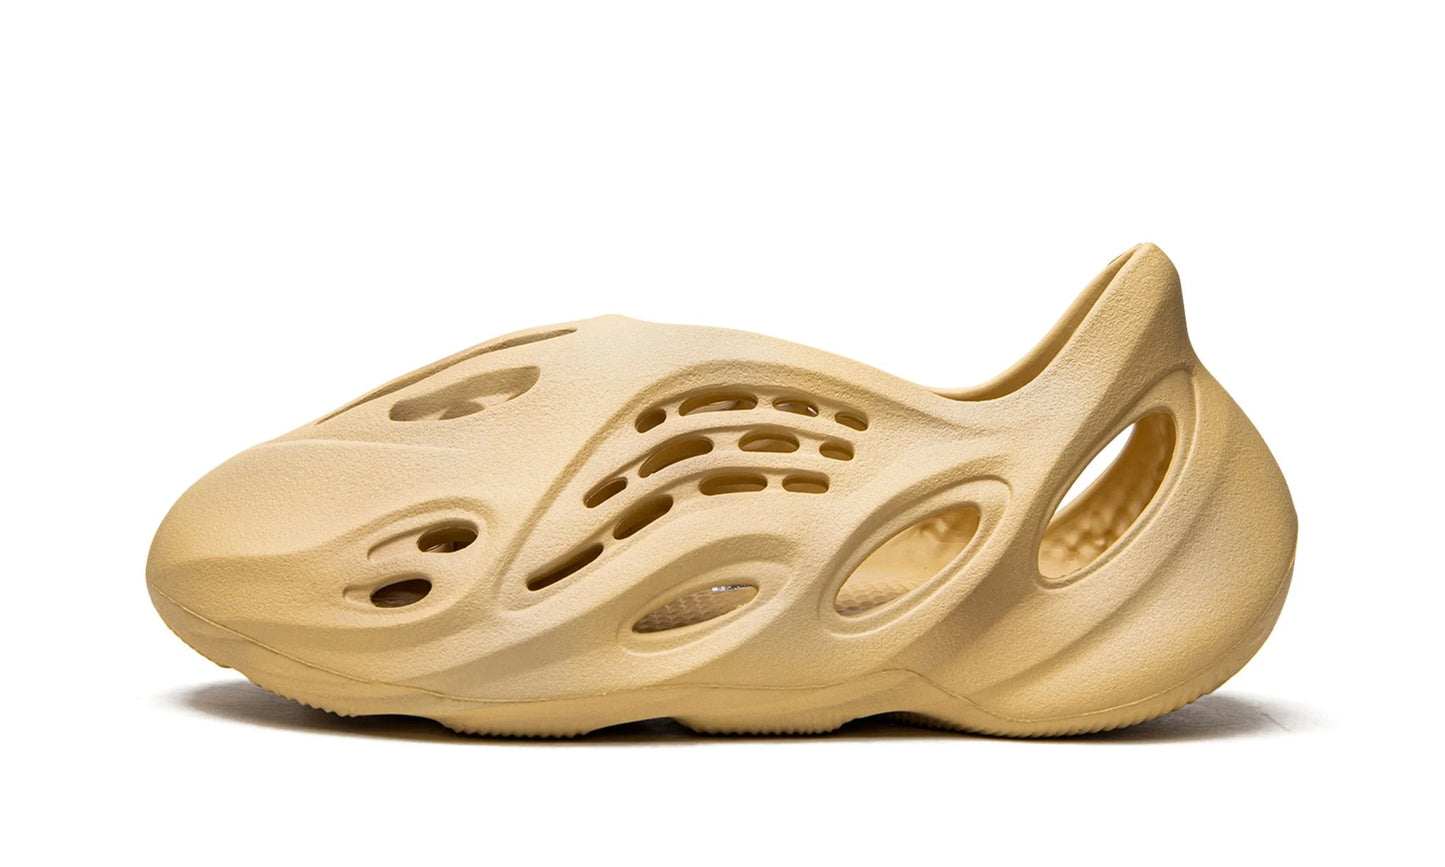 adidas Yeezy Foam Runner 'Desert Sand'